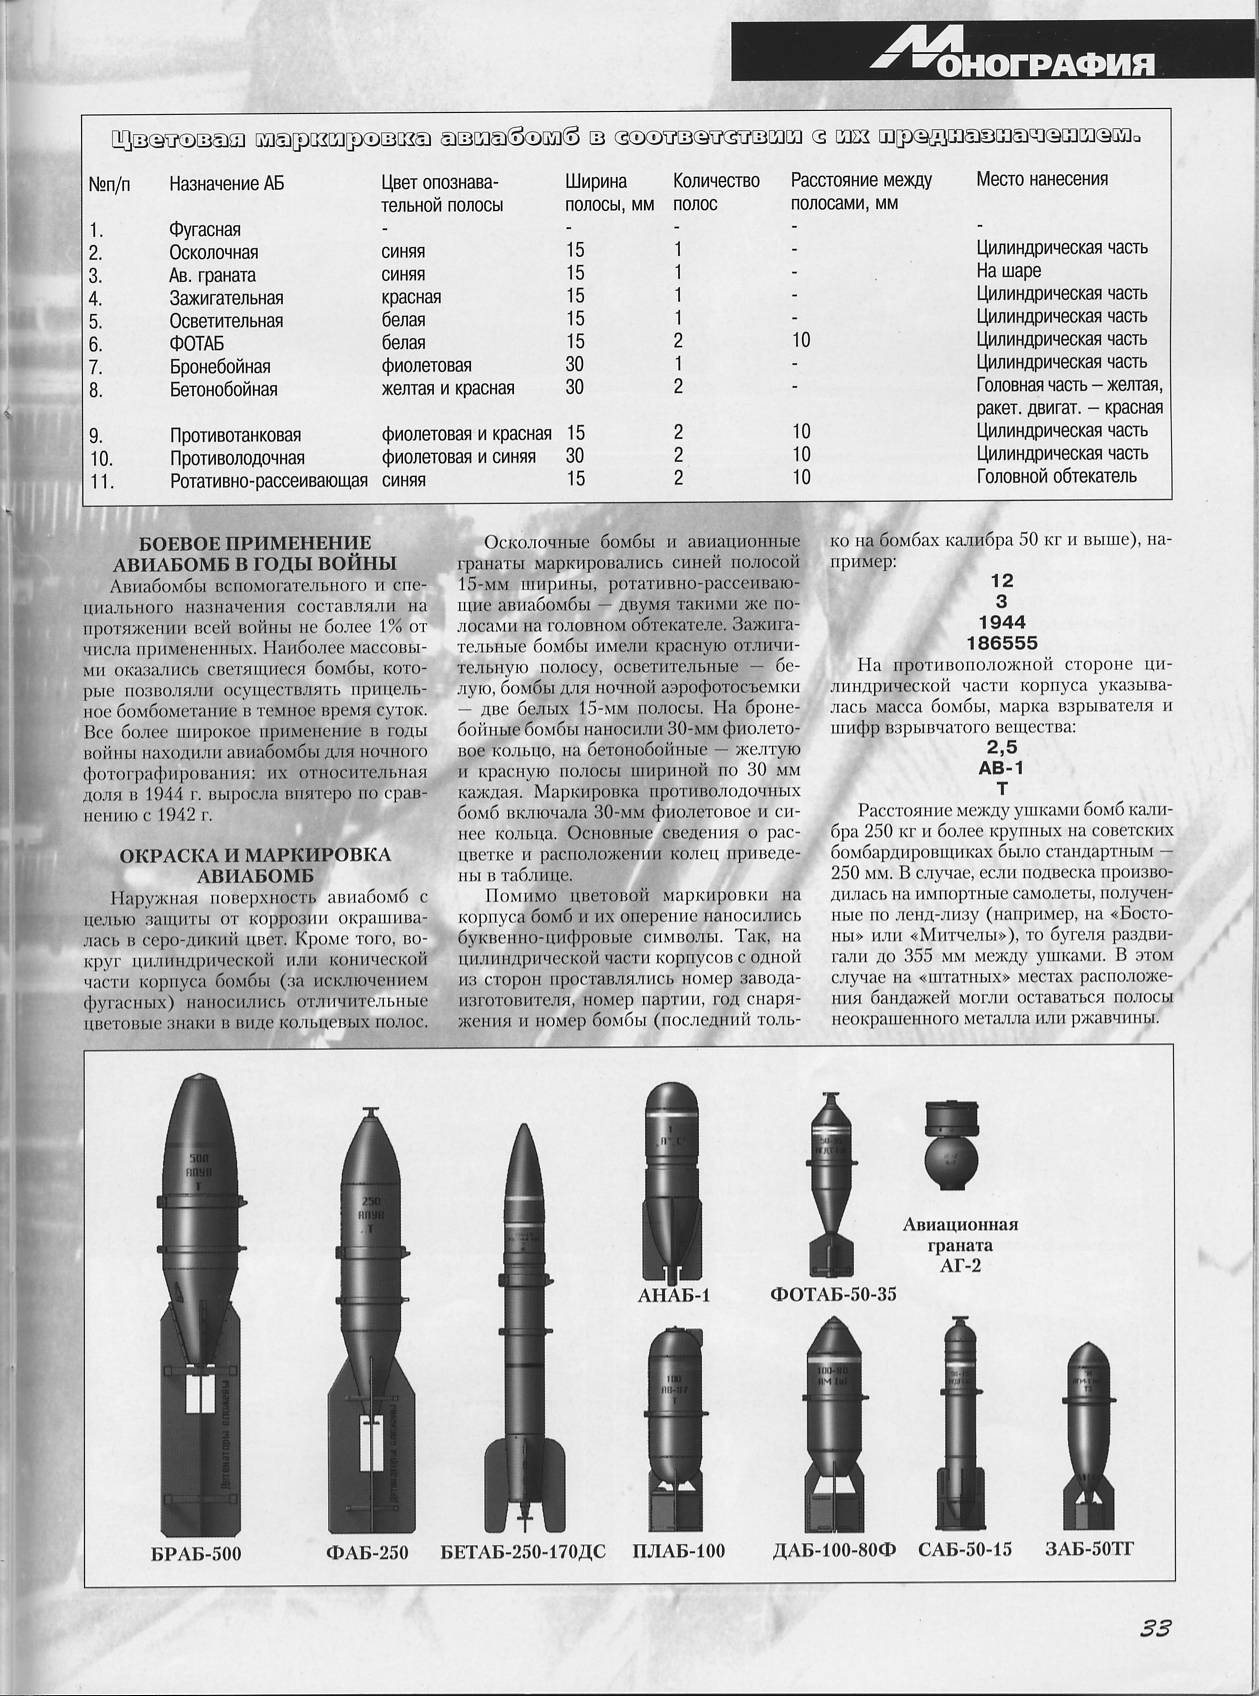 Планирующие боеприпасы: какие преимущества даст россии серийное производство корректируемых авиабомб нового поколения